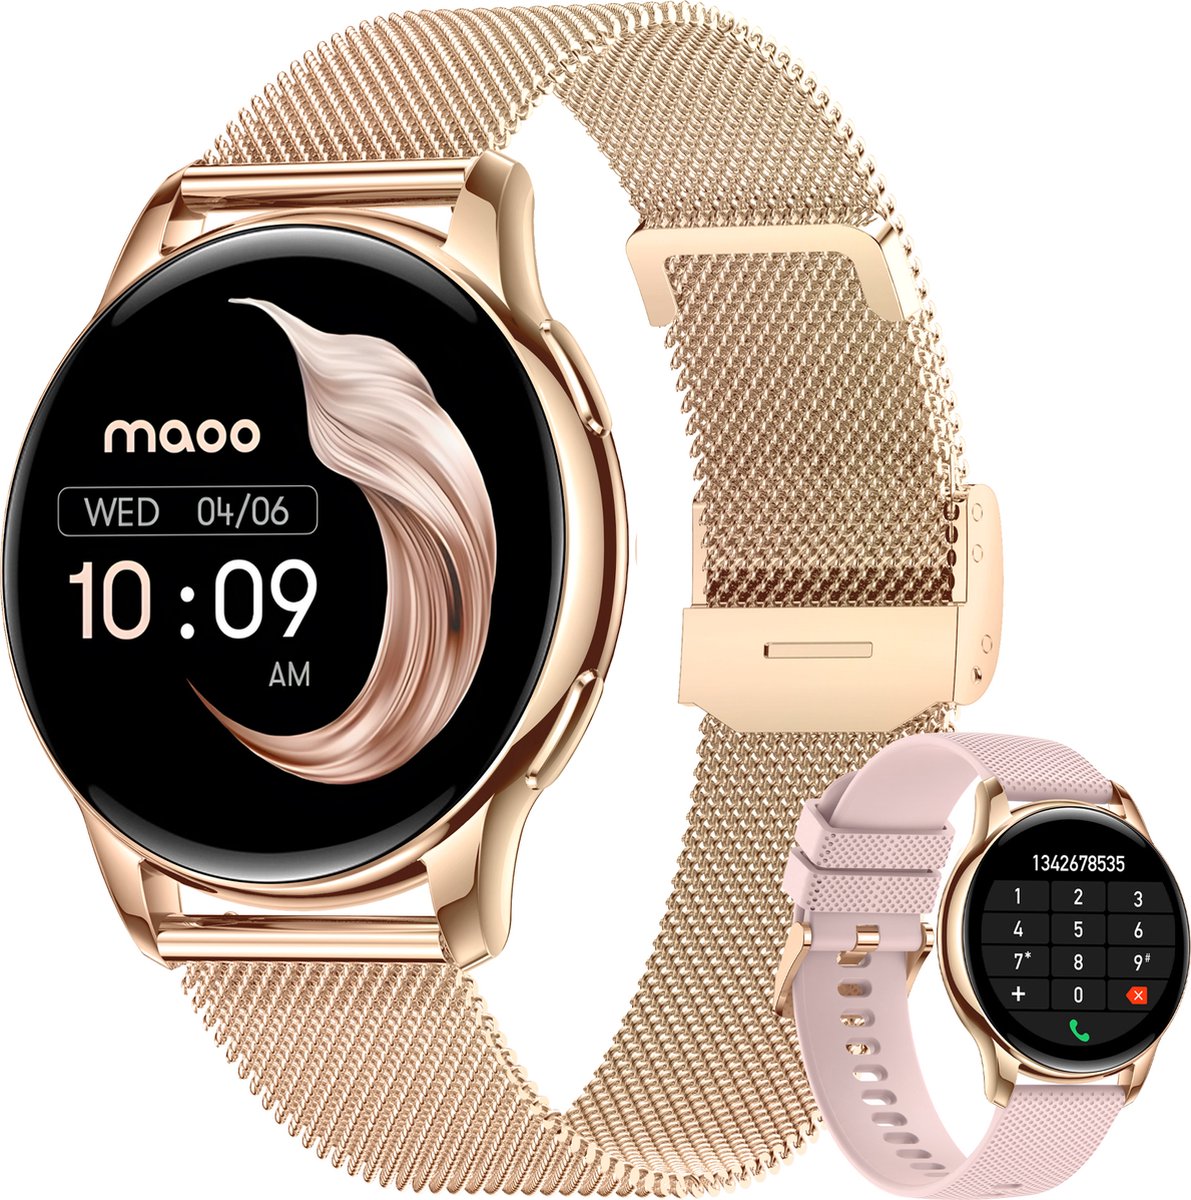 Maoo Ventura AMOLED Smartwatch Dames - Moederdag Cadeautje - RVS en Siliconen Bandje - Stappenteller - Hartslagmeter - Slaapmonitor - Multisport - Geschikt voor Android en iOS - Rosé Goud en Roze - Maoo